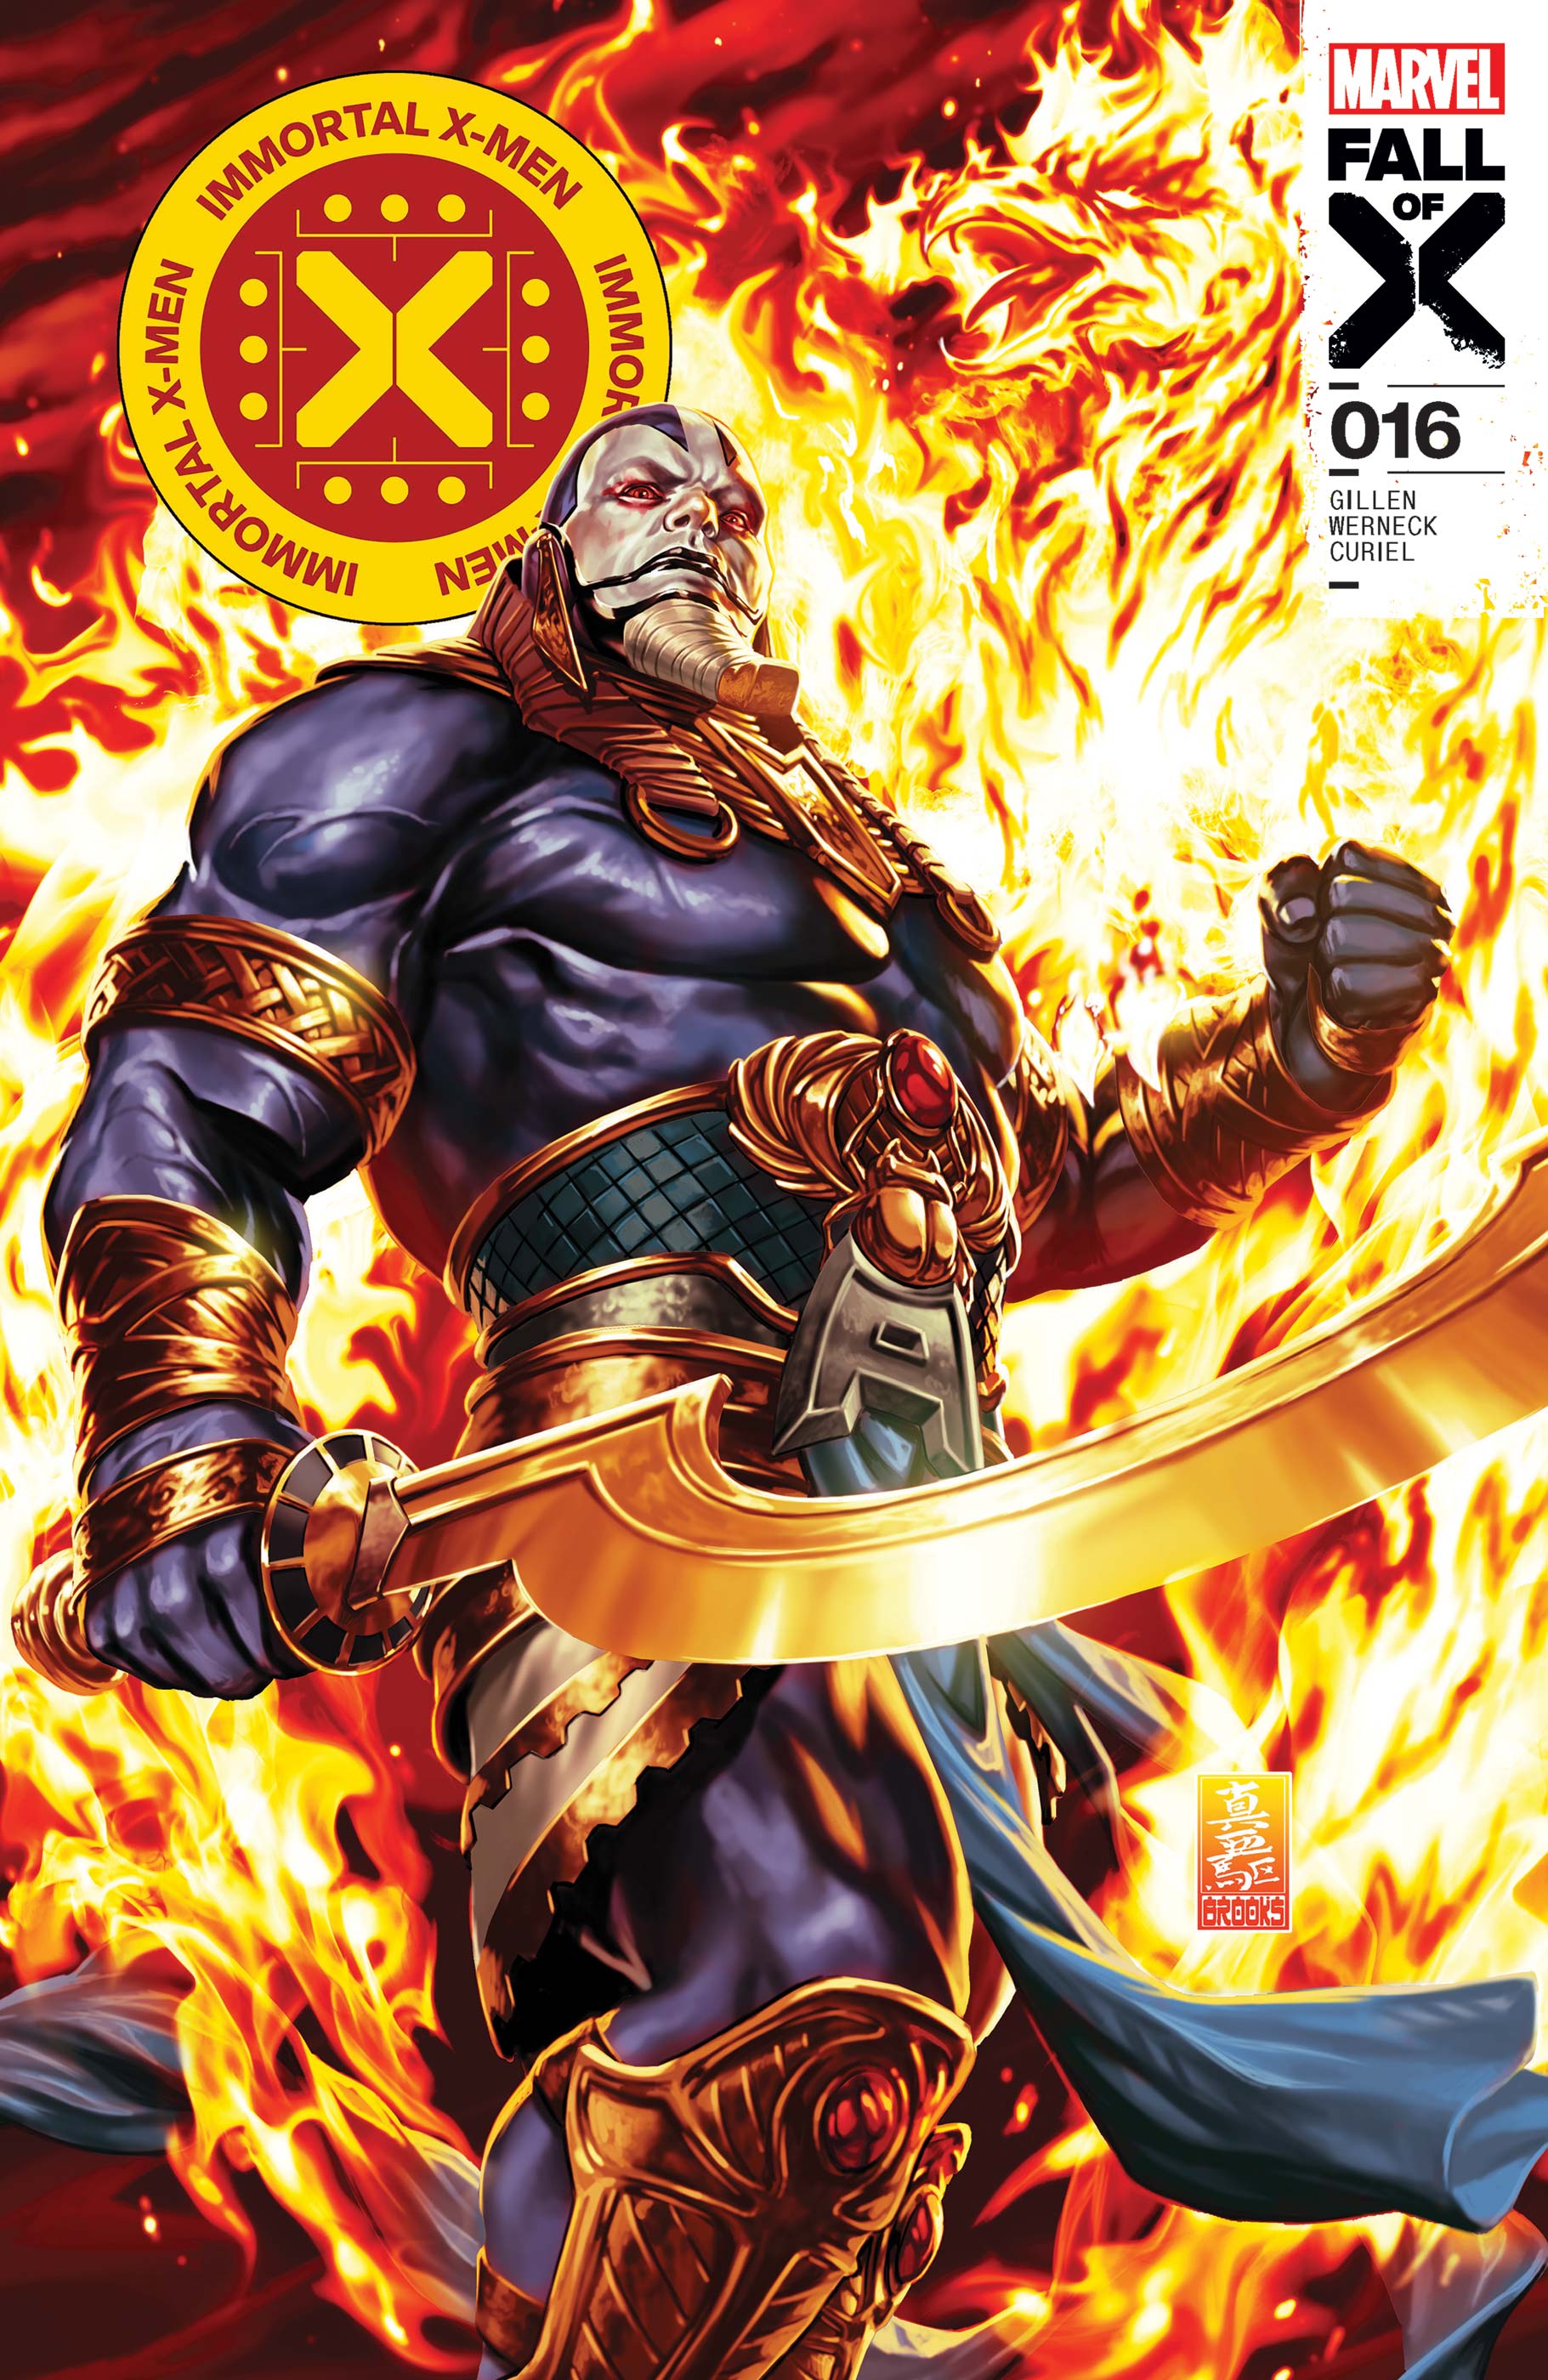 Immortal X-Men #16 (Fall of the X-Men)